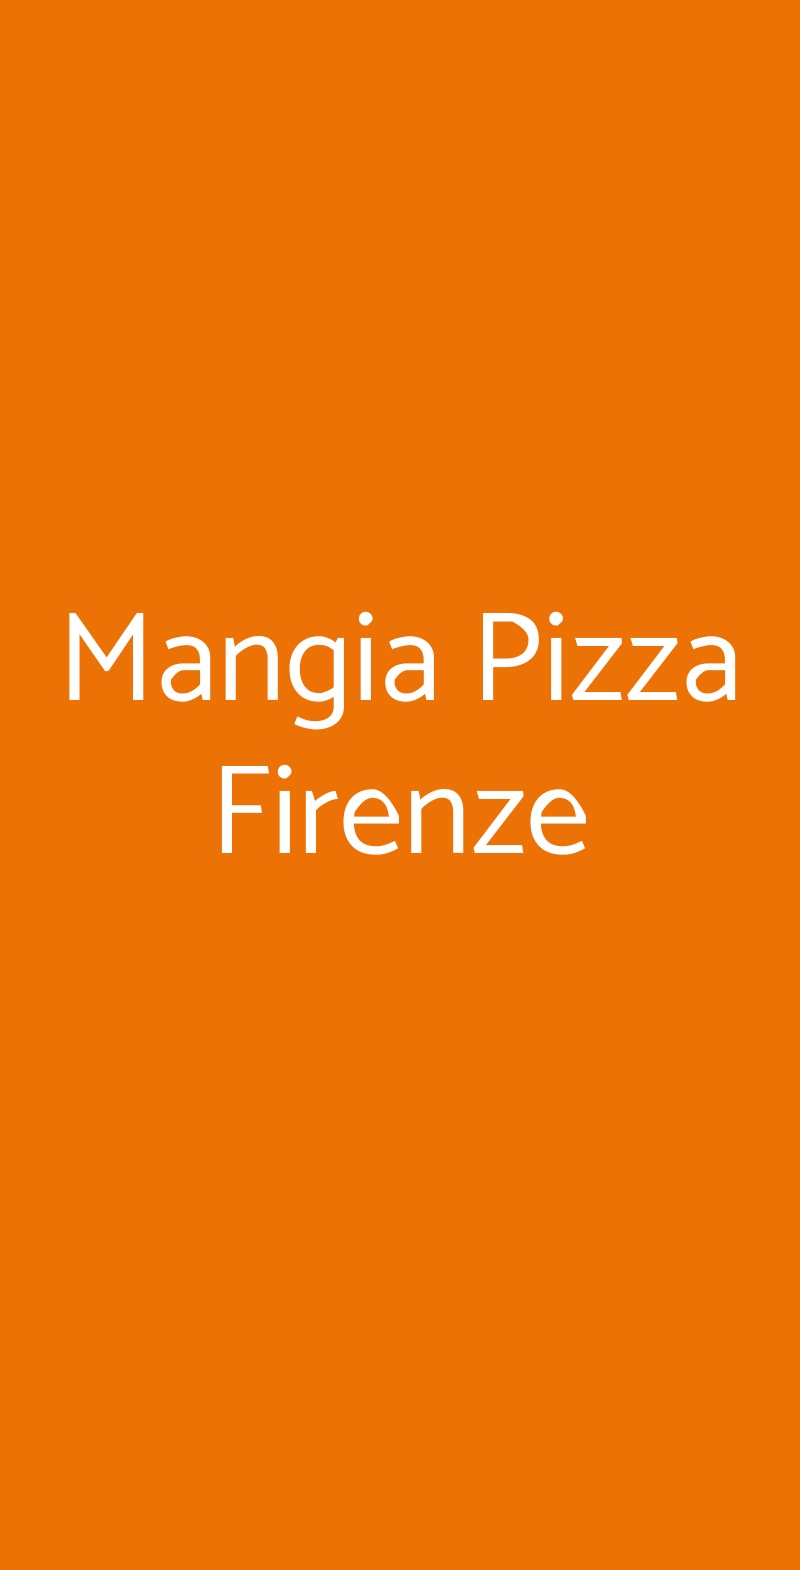 Mangia Pizza Firenze Firenze menù 1 pagina